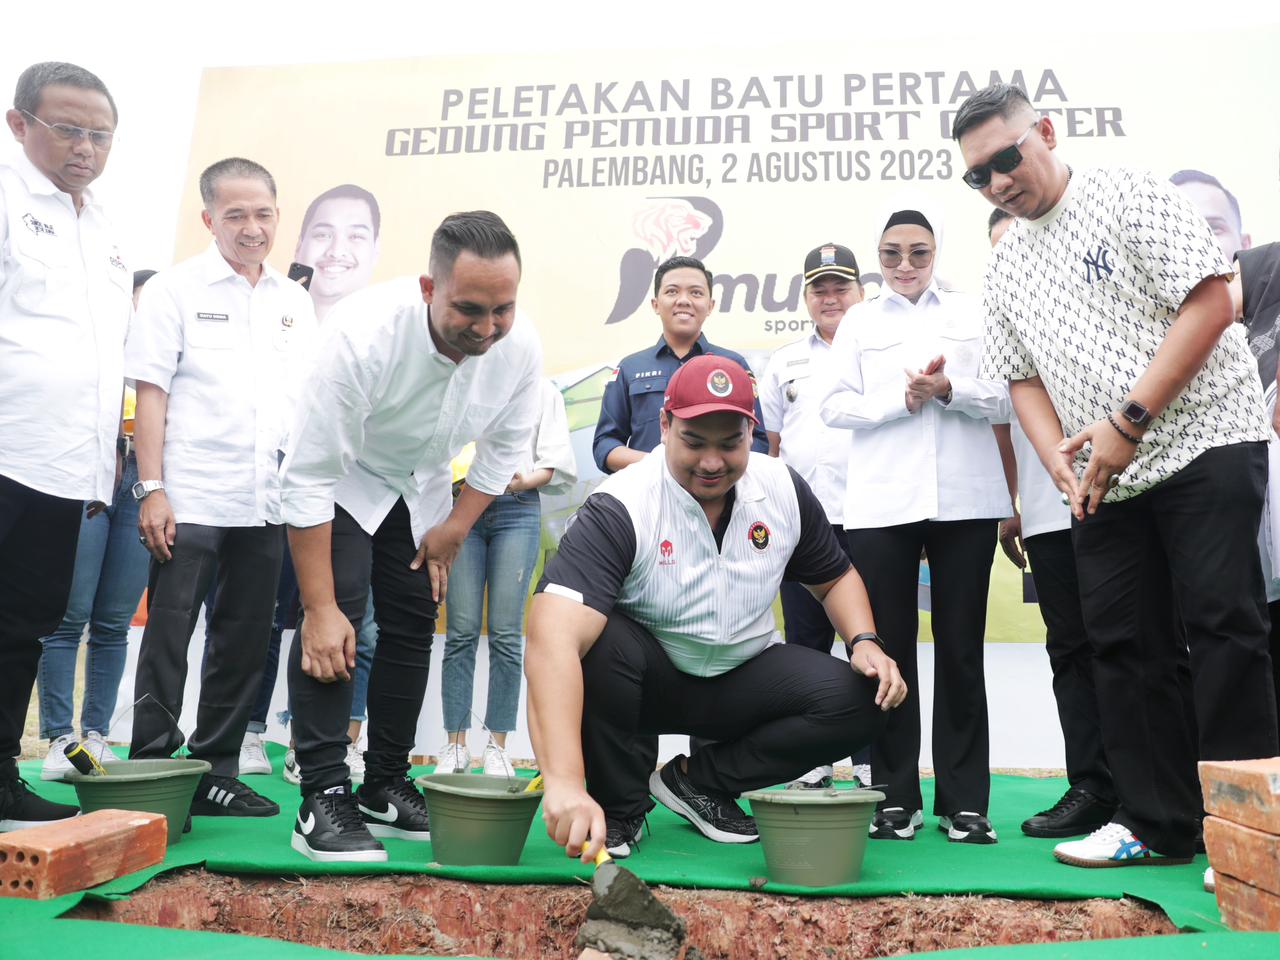 Menpora Dito Meletakkan Batu Pertama Pembangunan Gedung Pemuda Sport Center di Palembang